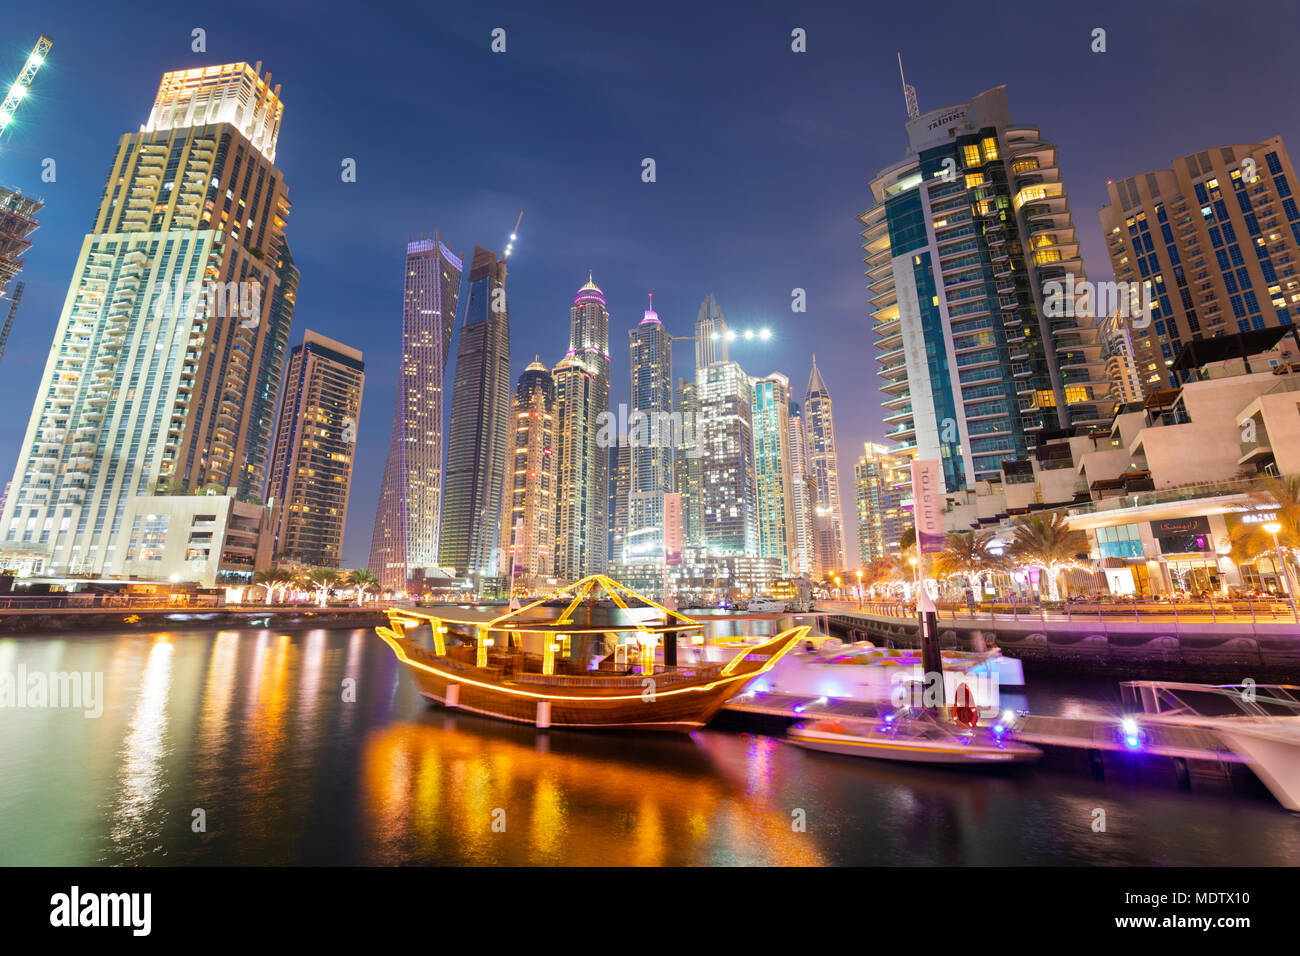 Une architecture moderne avec des visites ci-dessous boutre tours éclairées la nuit dans le port de plaisance de Dubaï, Dubaï, Émirats arabes unis, Moyen Orient Banque D'Images